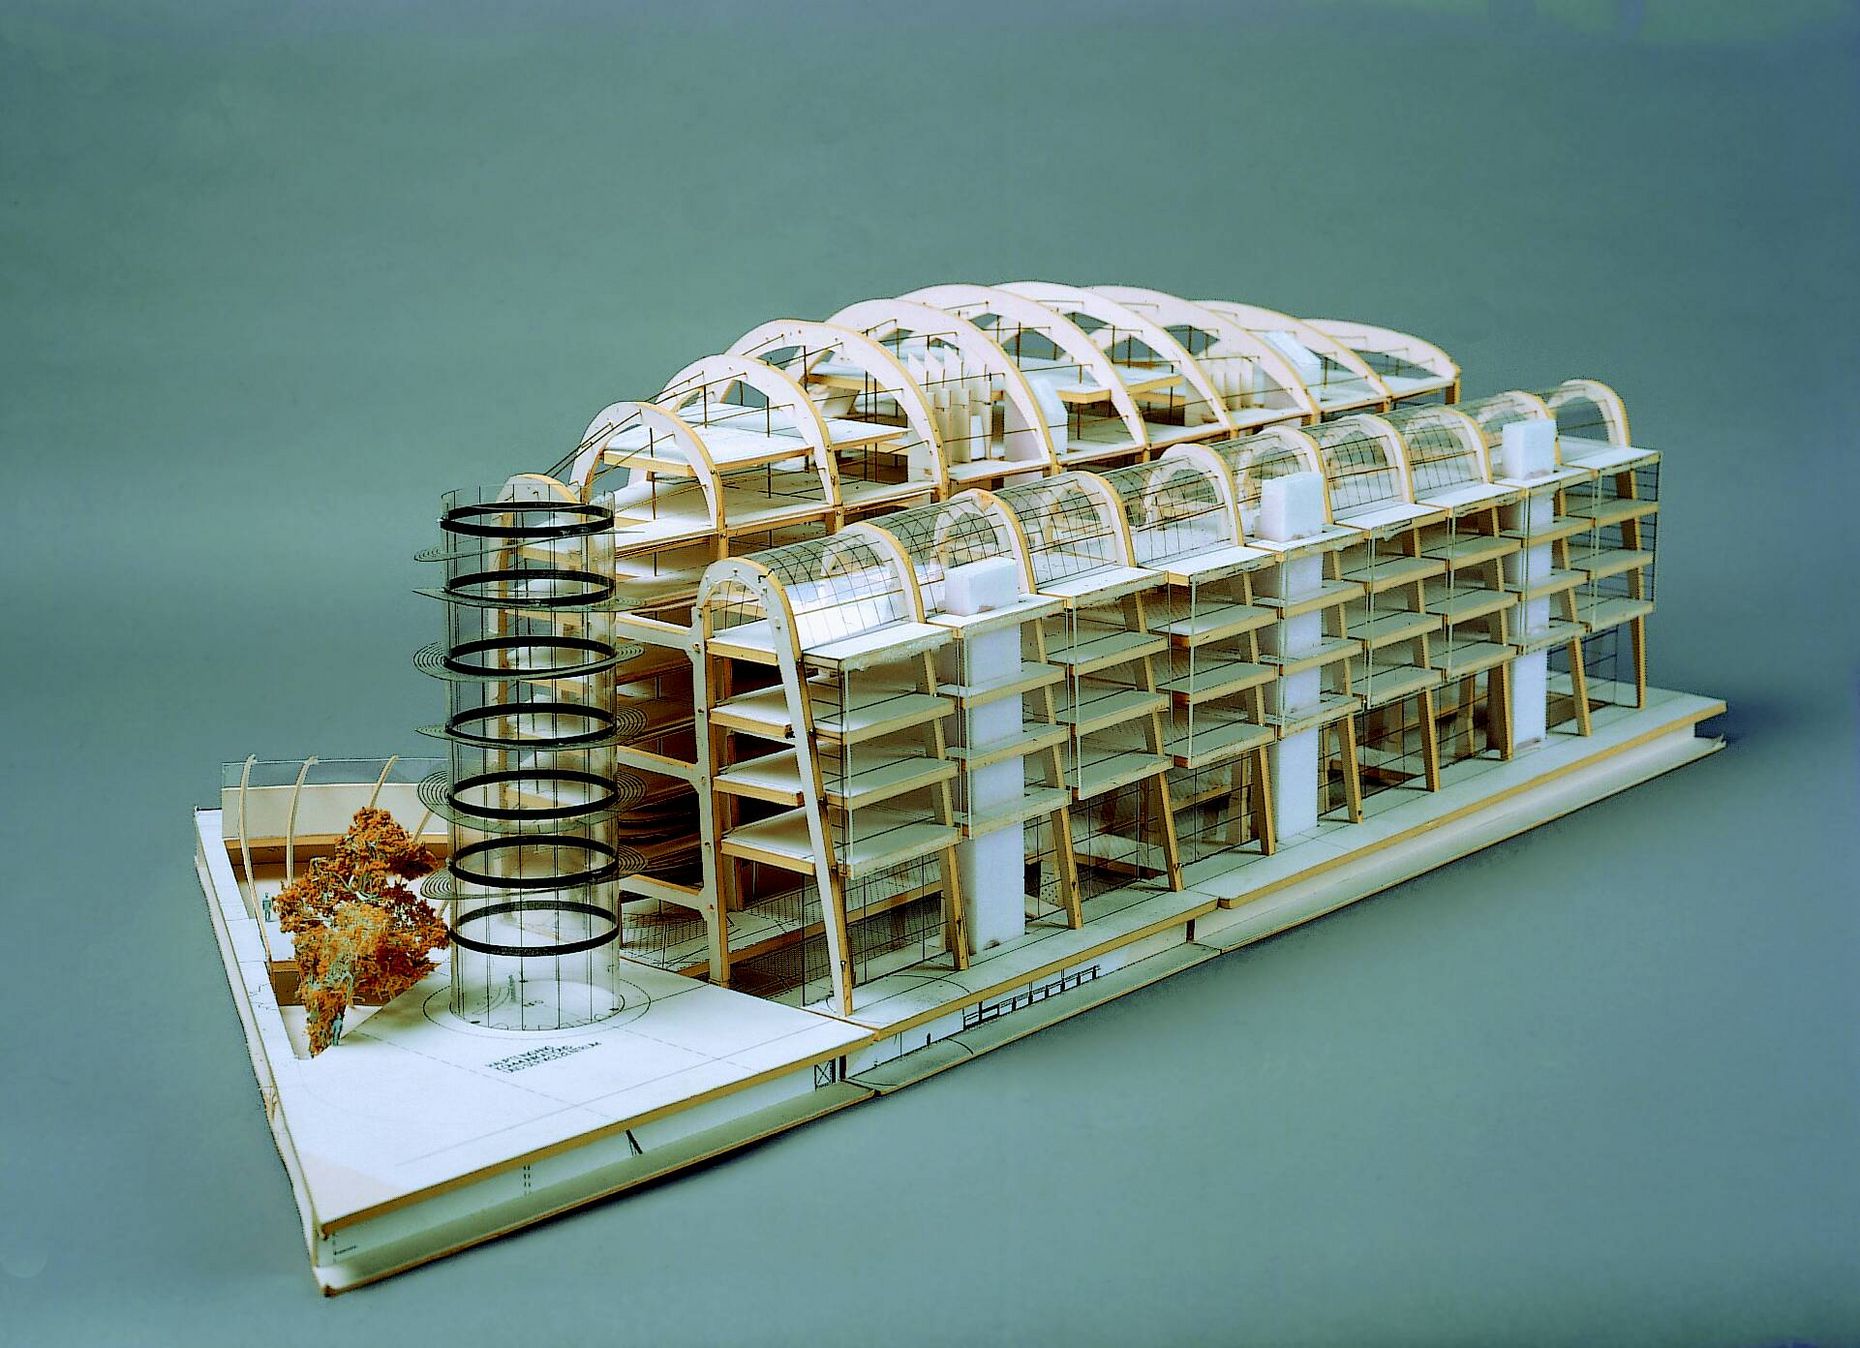 Architekturmodell von Nicholas Grimshaw and Partners, Pappe, Papier, Kappaplatte, 20 x 60 x 30 cm